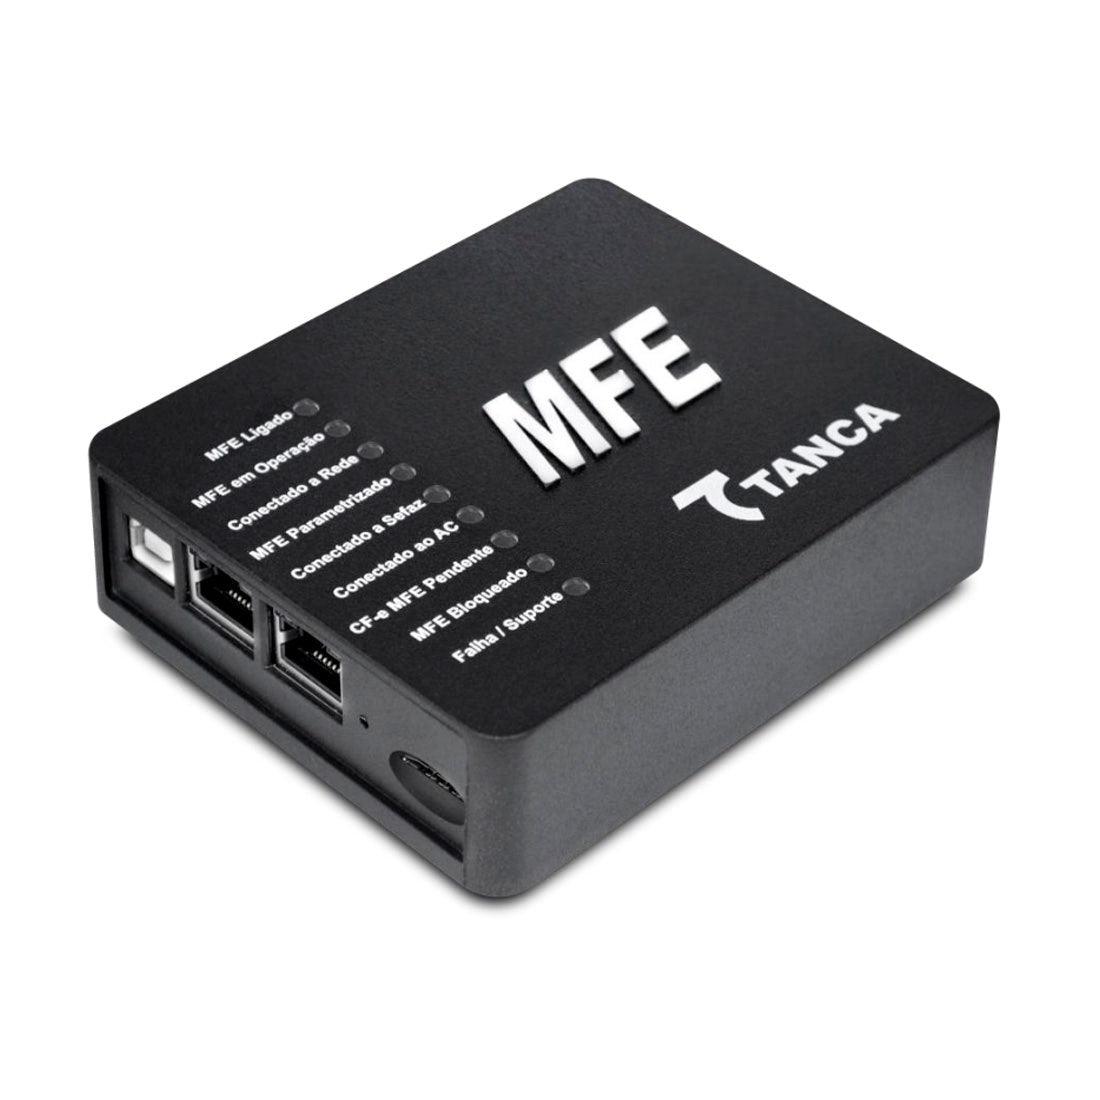 MFE Tanca CFE TM1000 CE 005519 - Mega Market